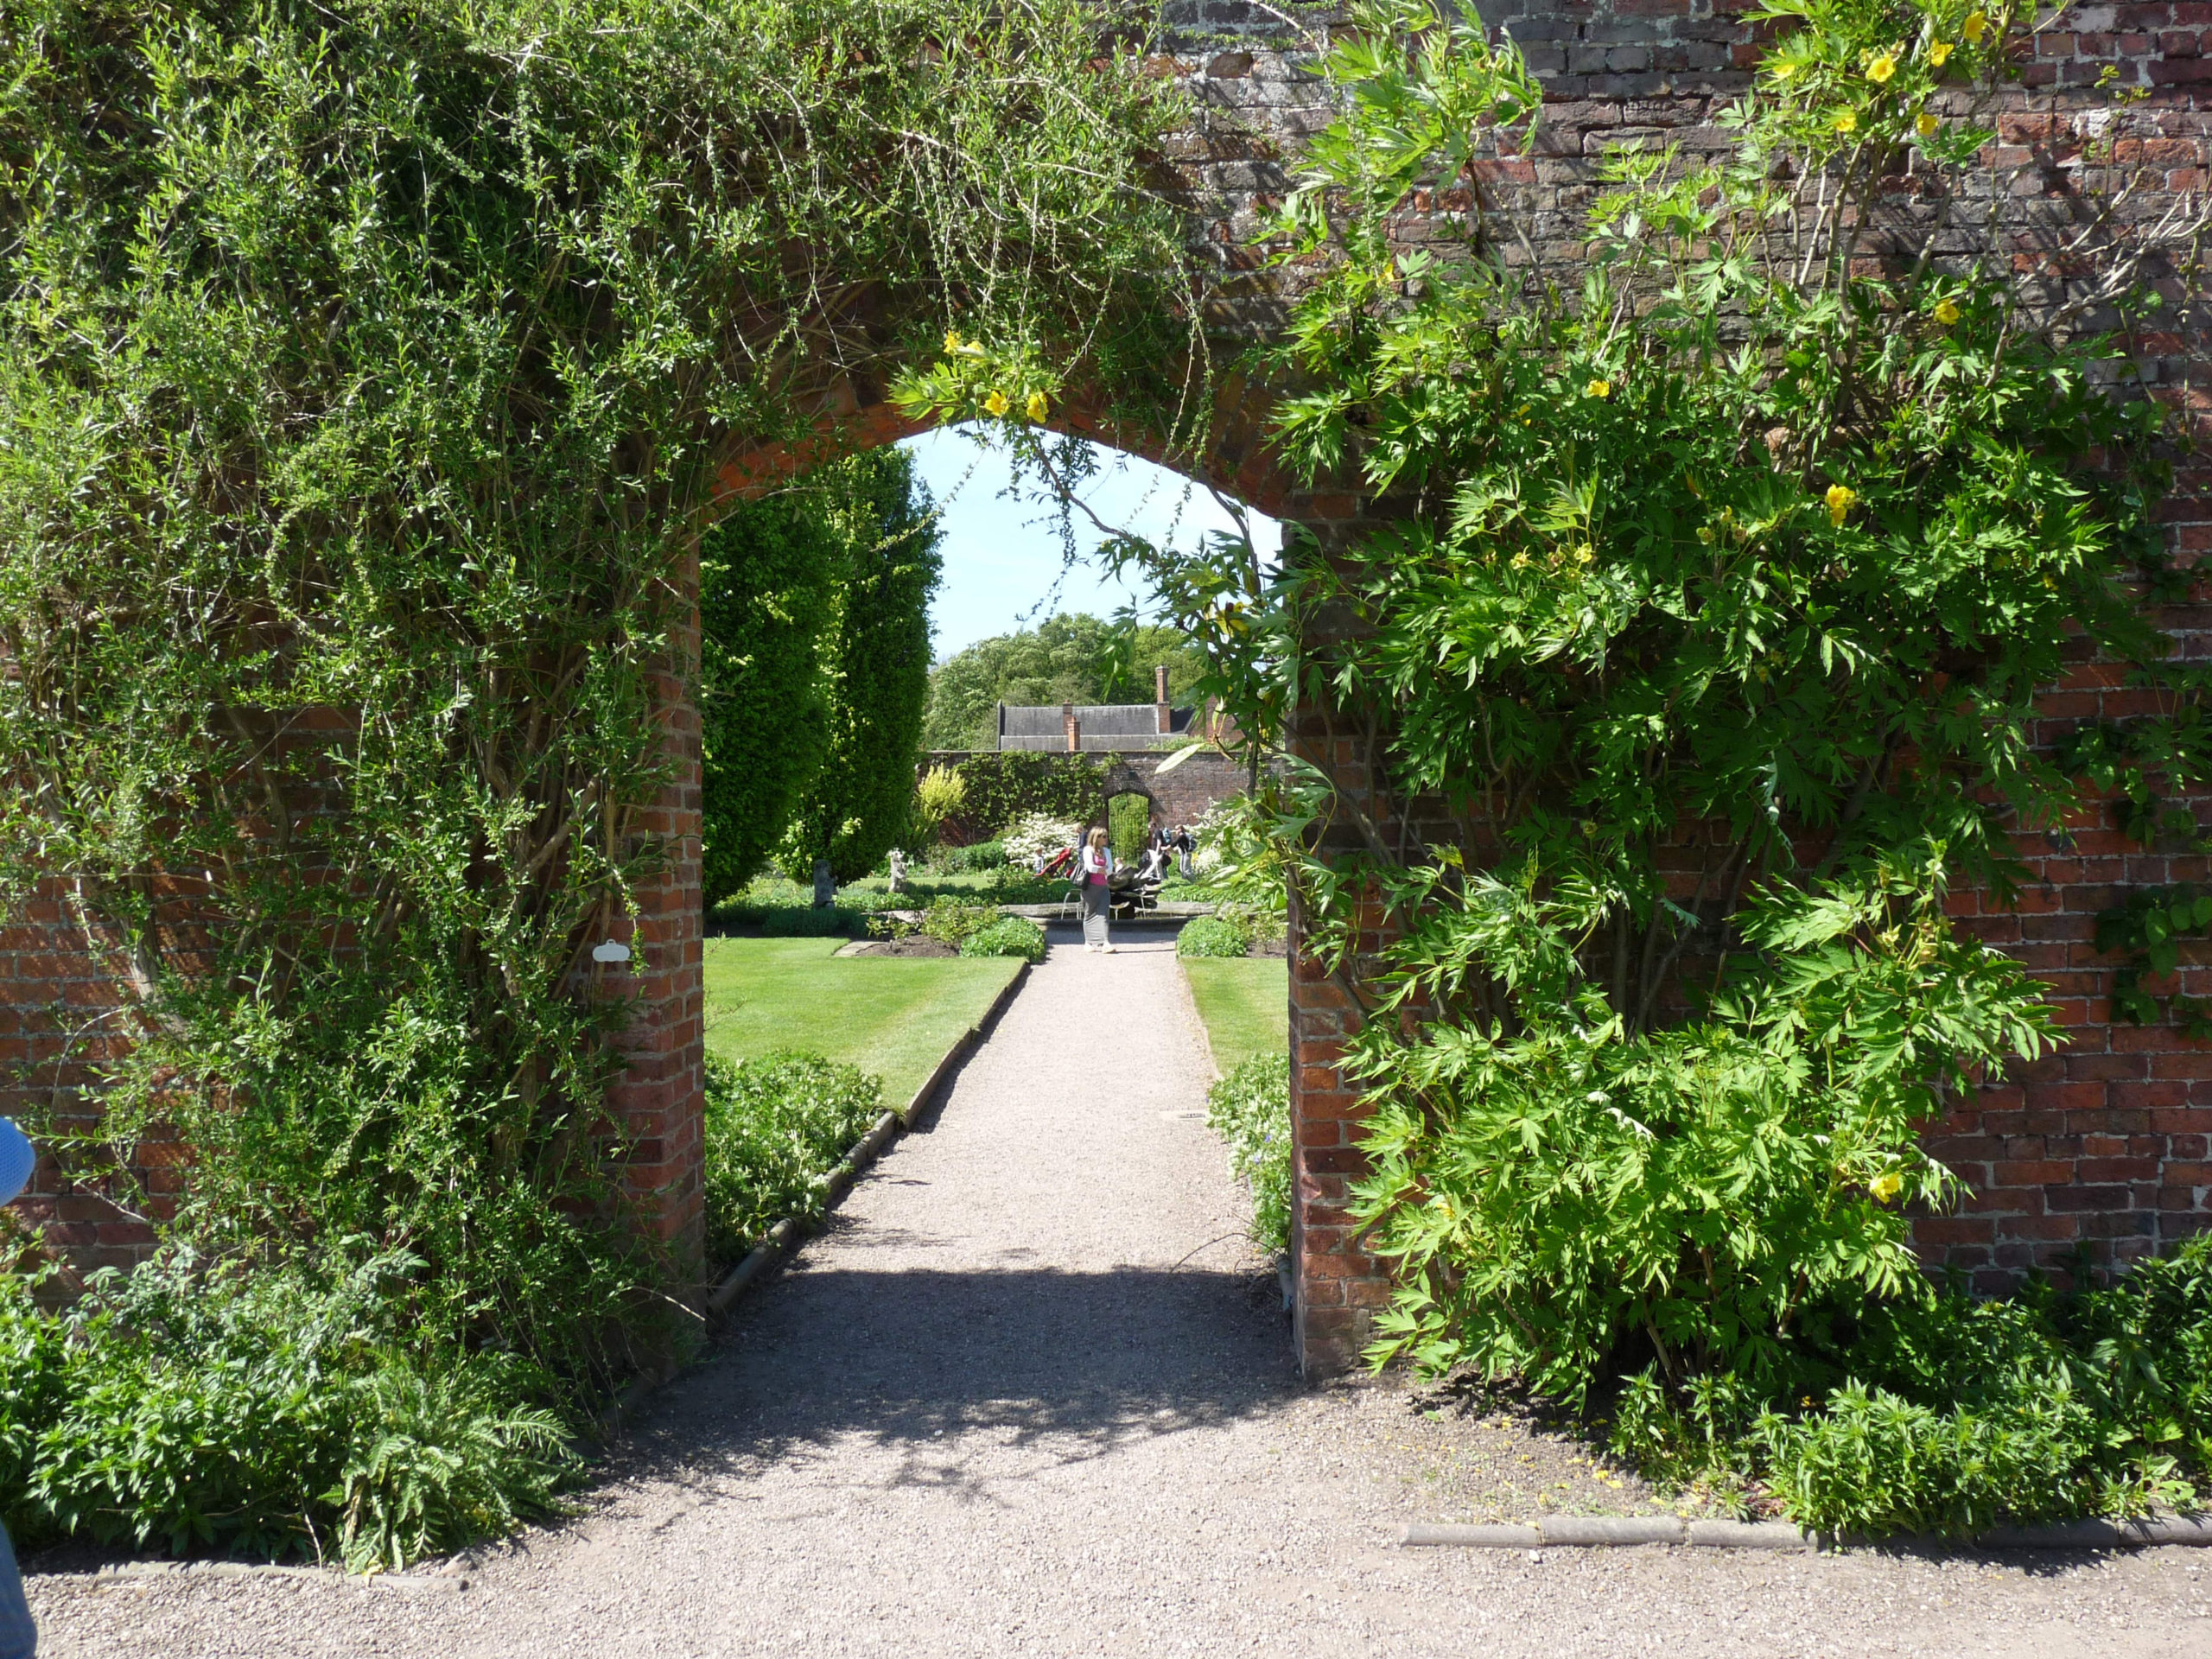 Inspiratie opdoen voor in de tuin? Bekijk online de mooiste lentetuinen van het Engelse graafschap Kent - bijgenaamd ‘the garden of England’.